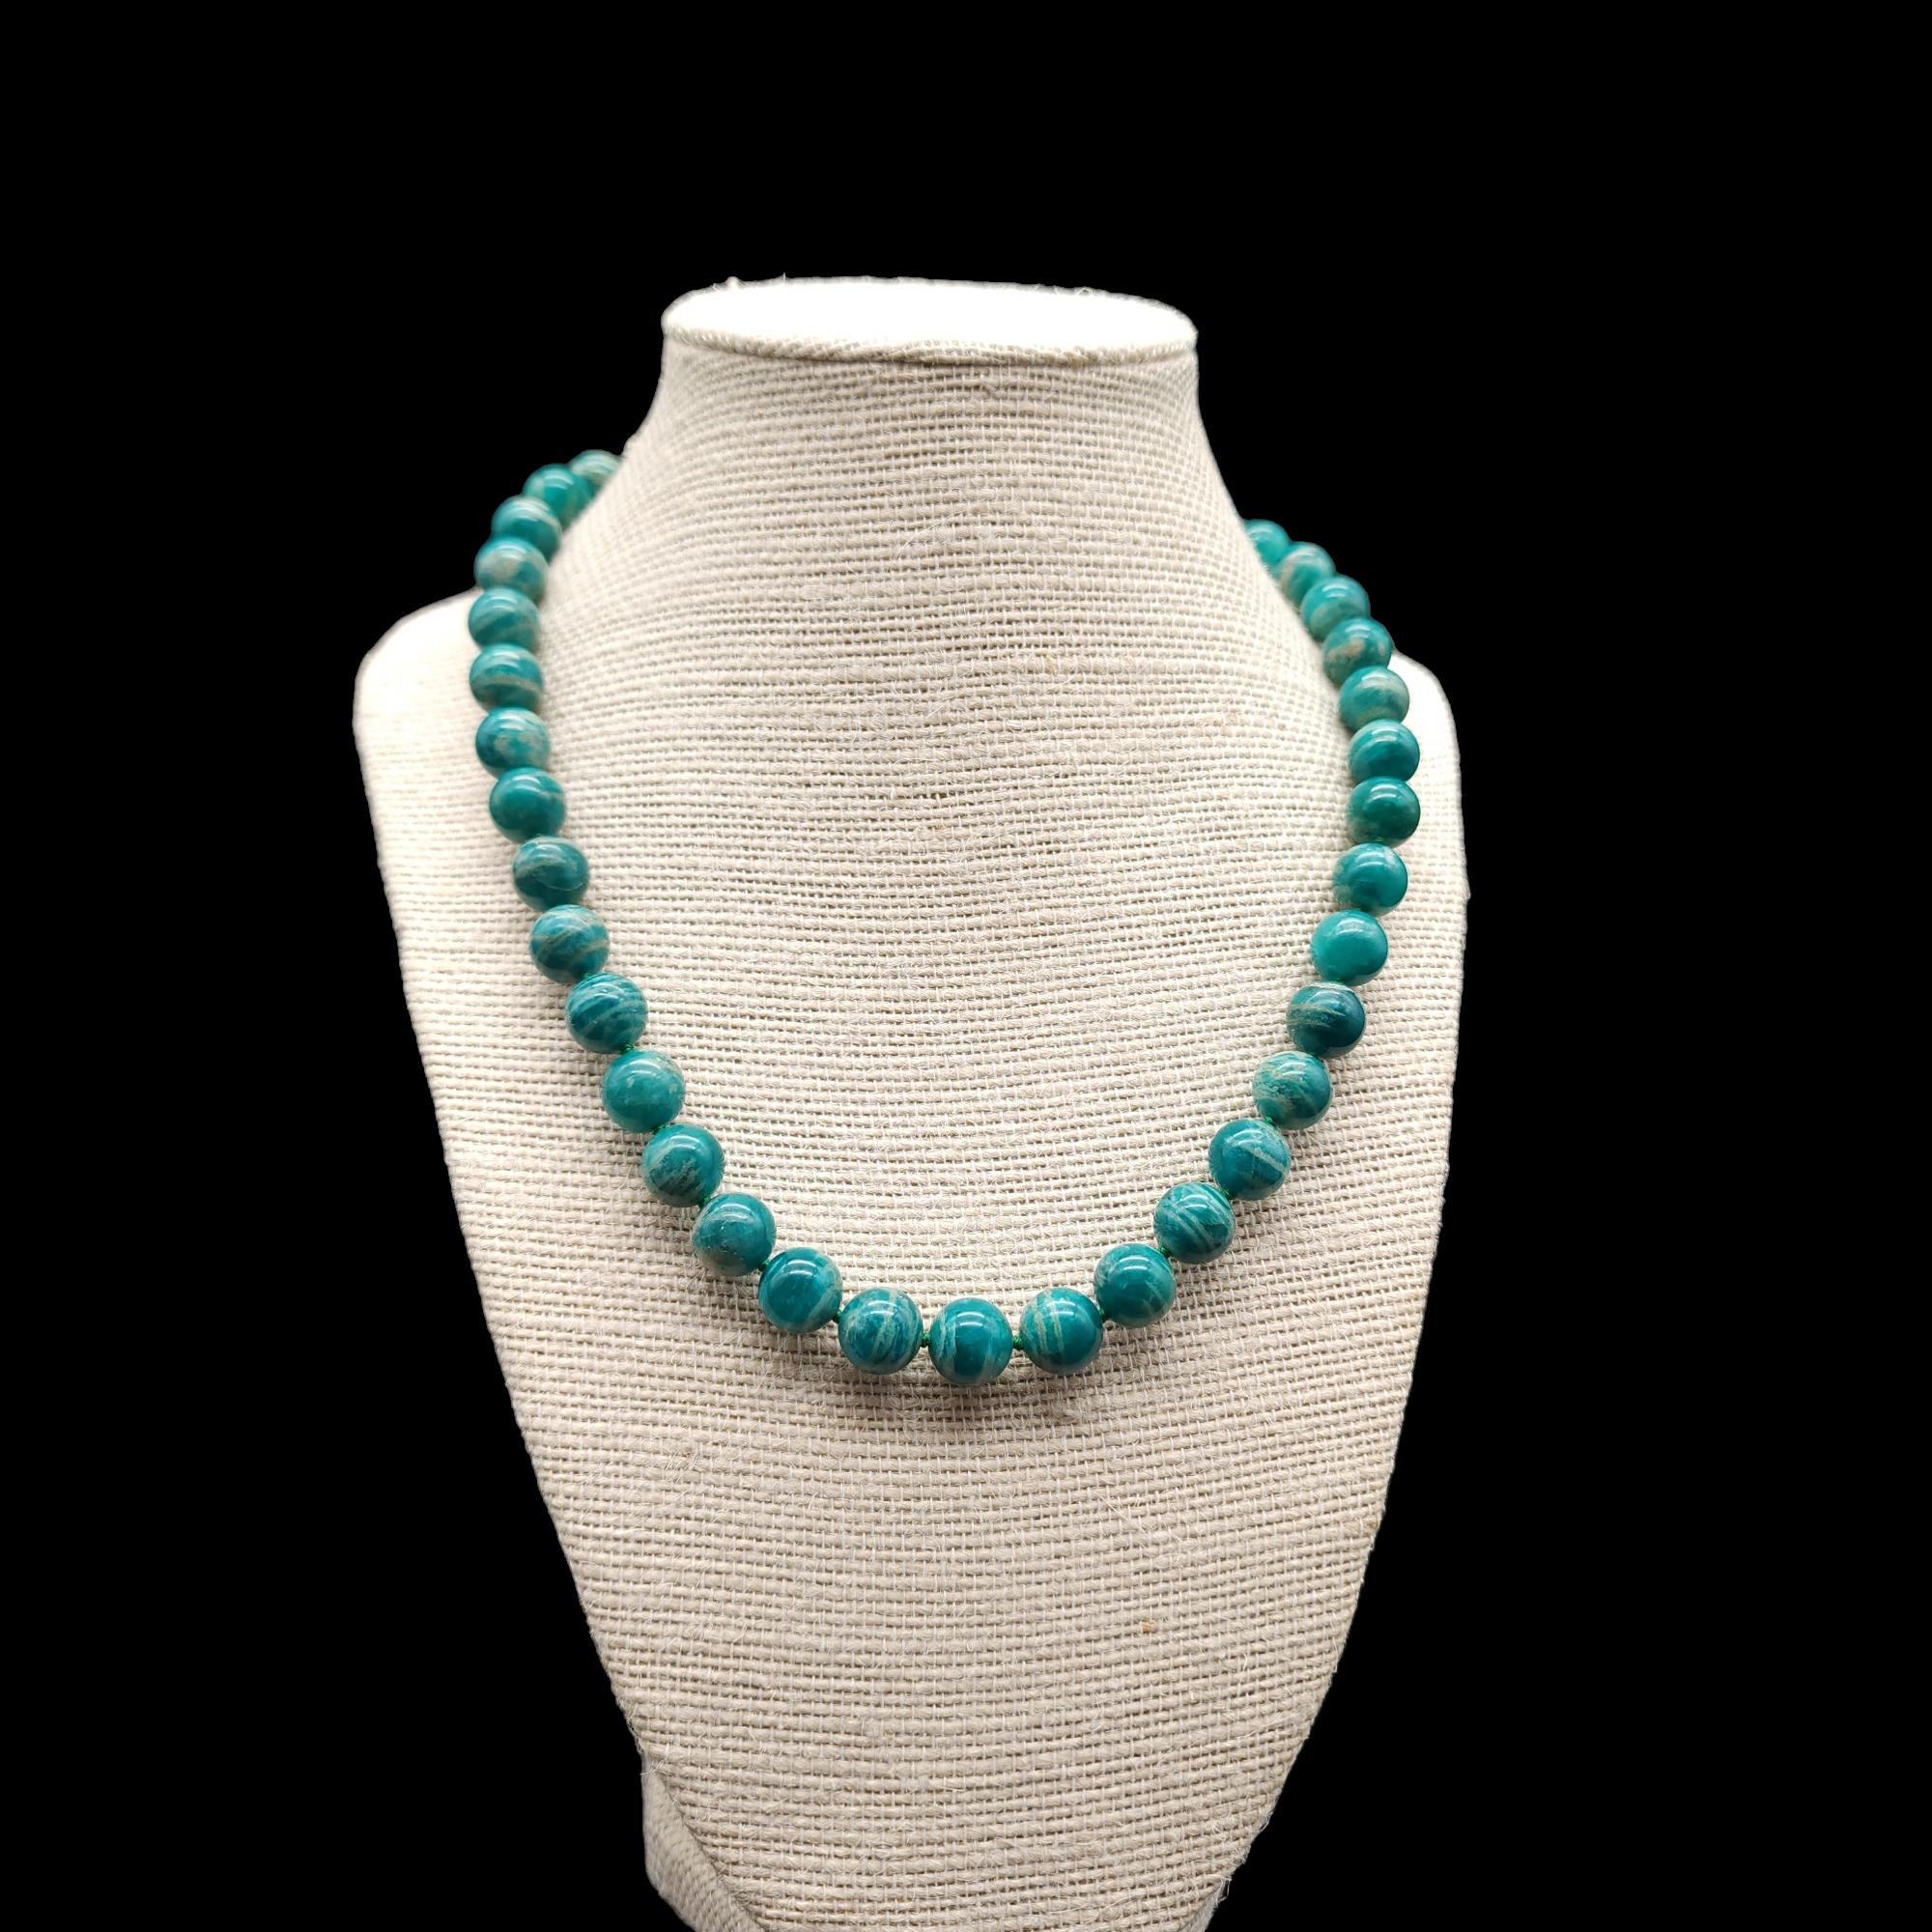 Diese Vintage-Halskette besteht aus geschliffenen Amazonit-Perlen in einem schönen blaugrünen Farbton. Die Perlen sind auf einem sicheren Seil aufgereiht und mit einem Verschluss aus Sterlingsilber verbunden. Die Halskette ist kragenlang und eignet